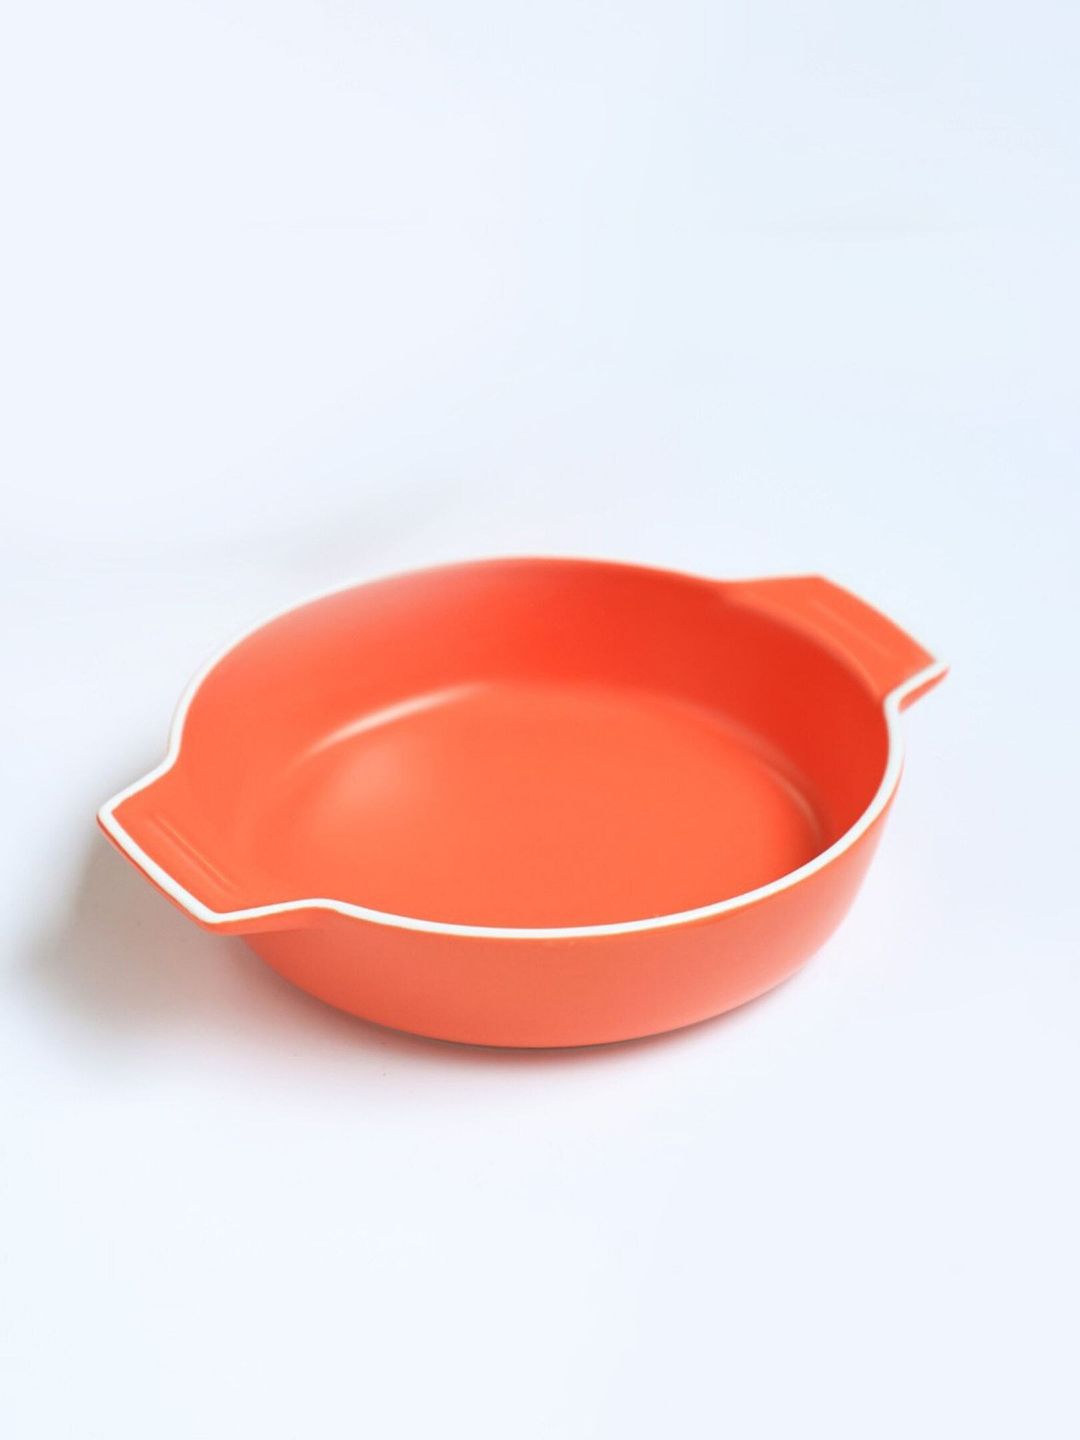 Nestasia Orange-Colored Solid Ceramic Baking Pot Price in India